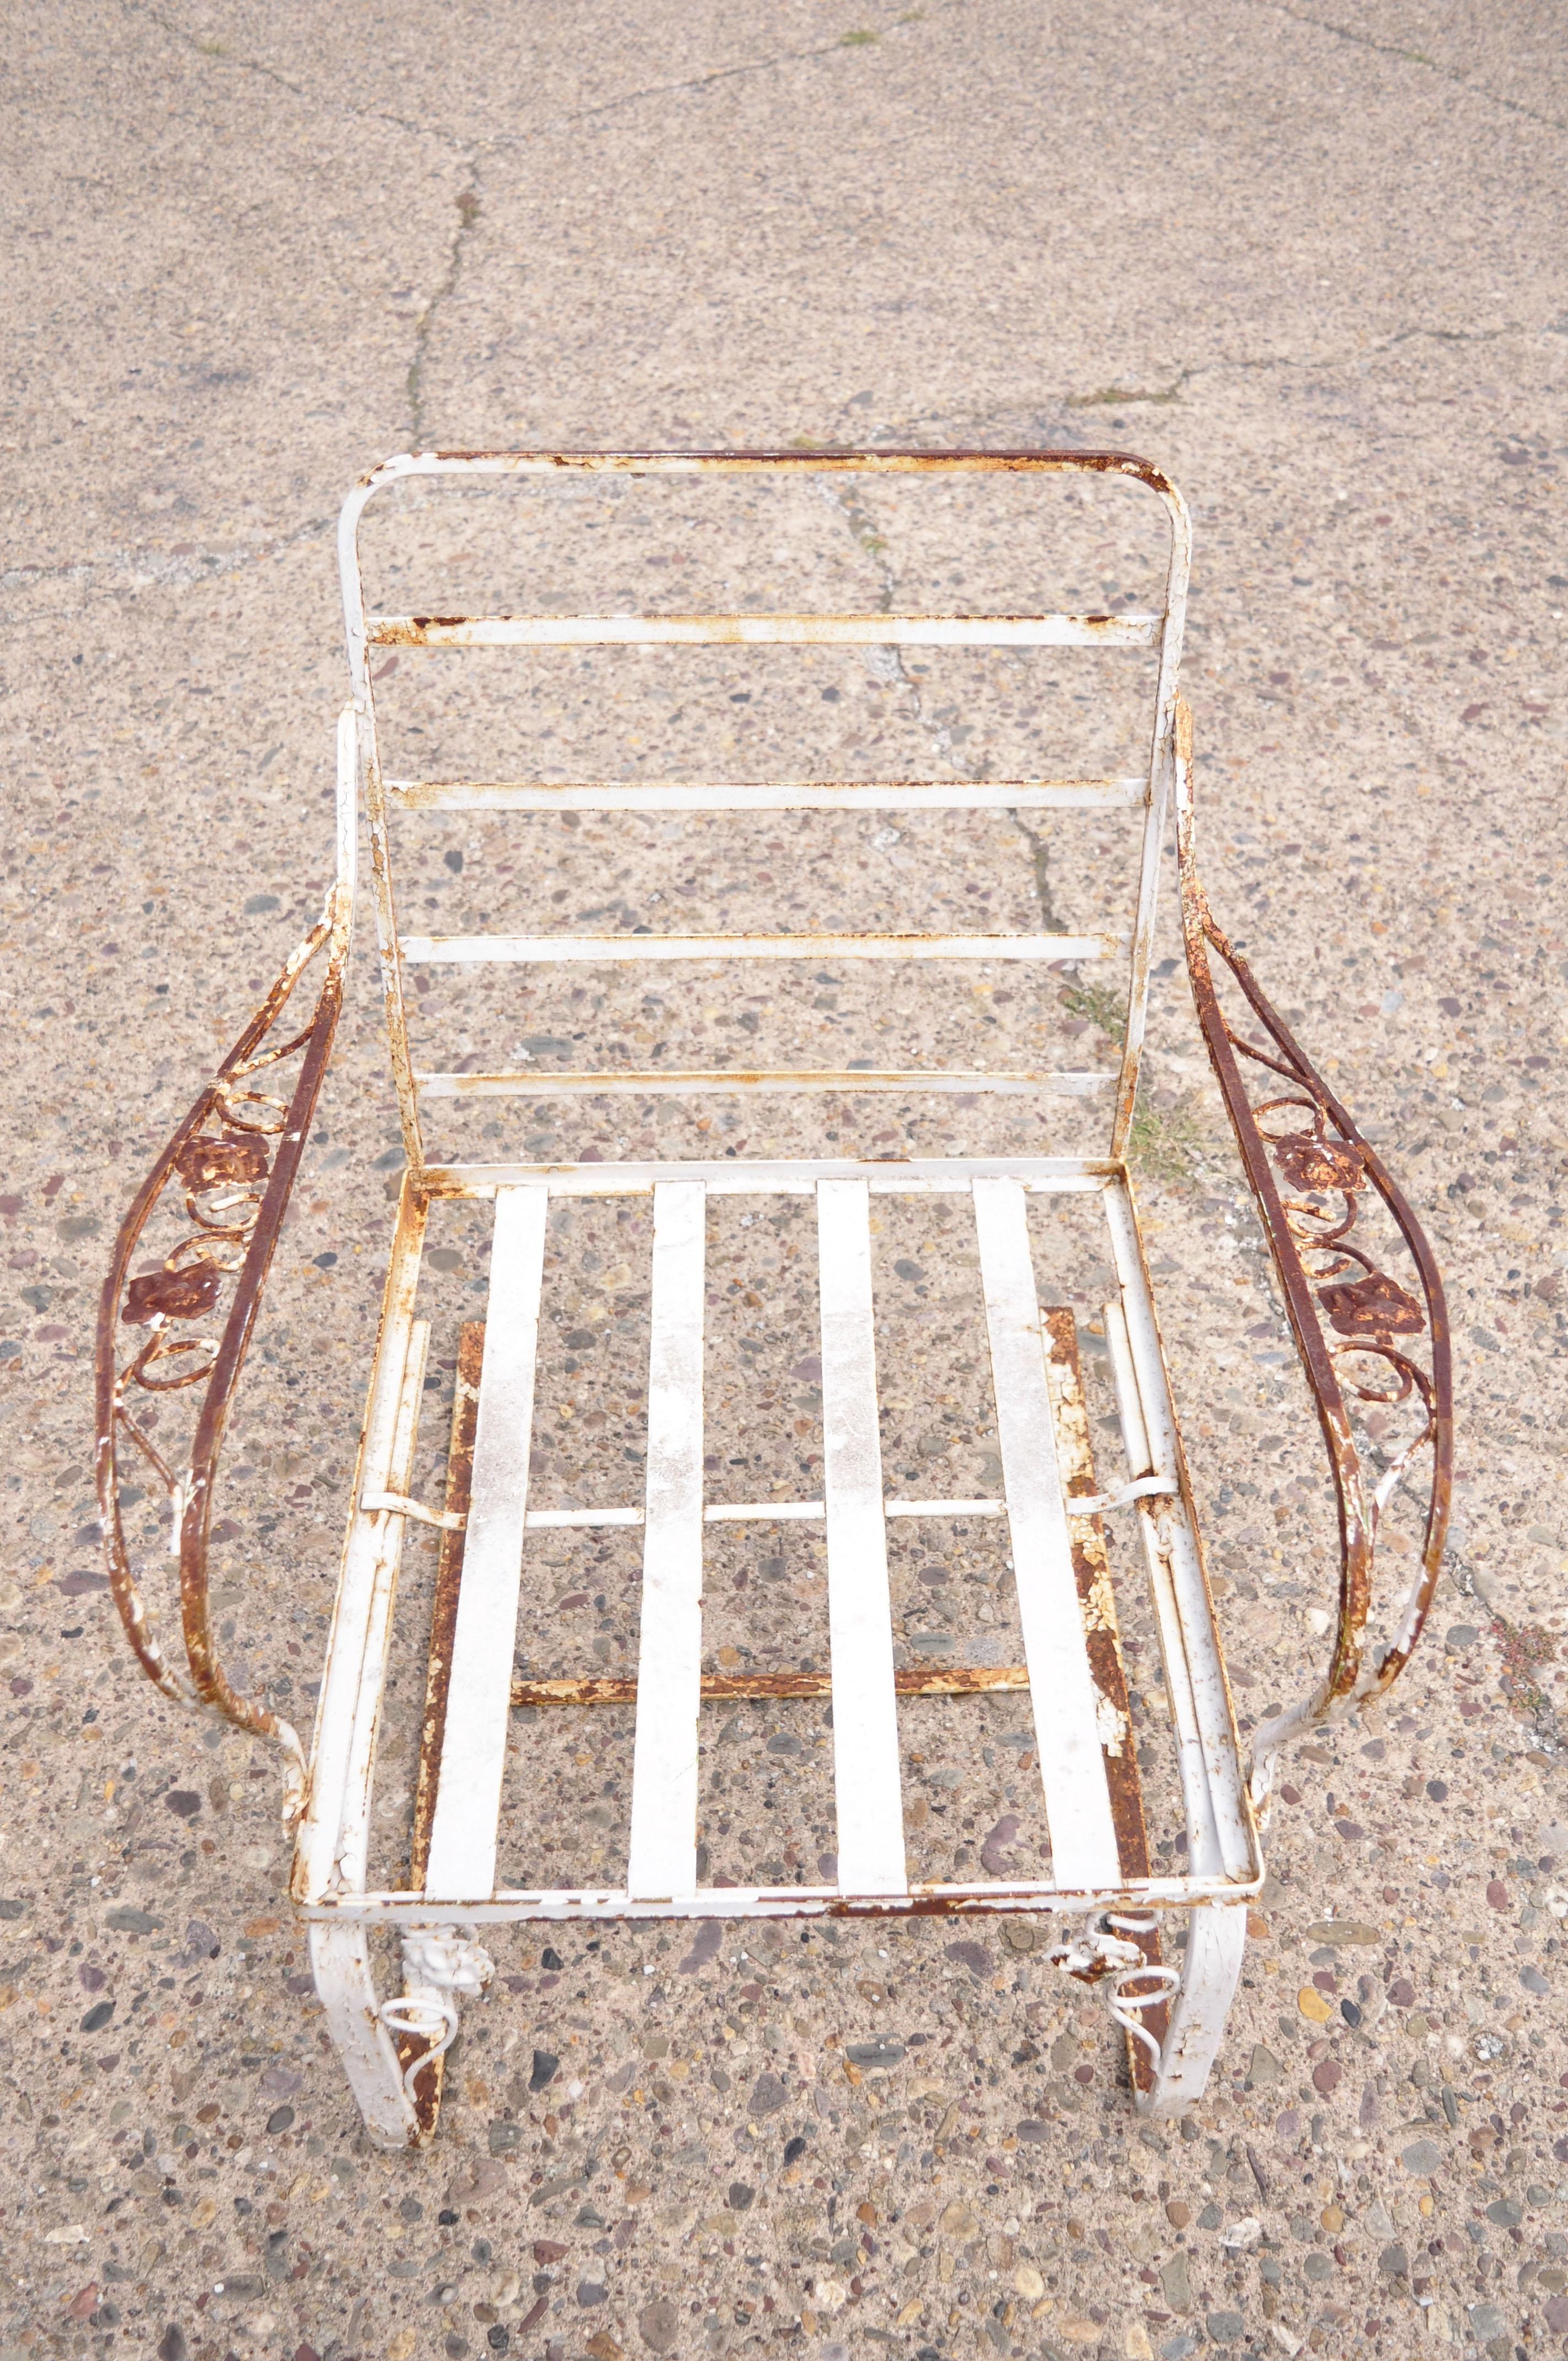 Vieille chaise longue de jardin bouffante en fer forgé Chantilly Rose de Woodard. L'article présente un cadre à ressort/bouchon, un motif classique de Chantilly Rose, une construction en fer forgé, un savoir-faire américain de qualité, un style et